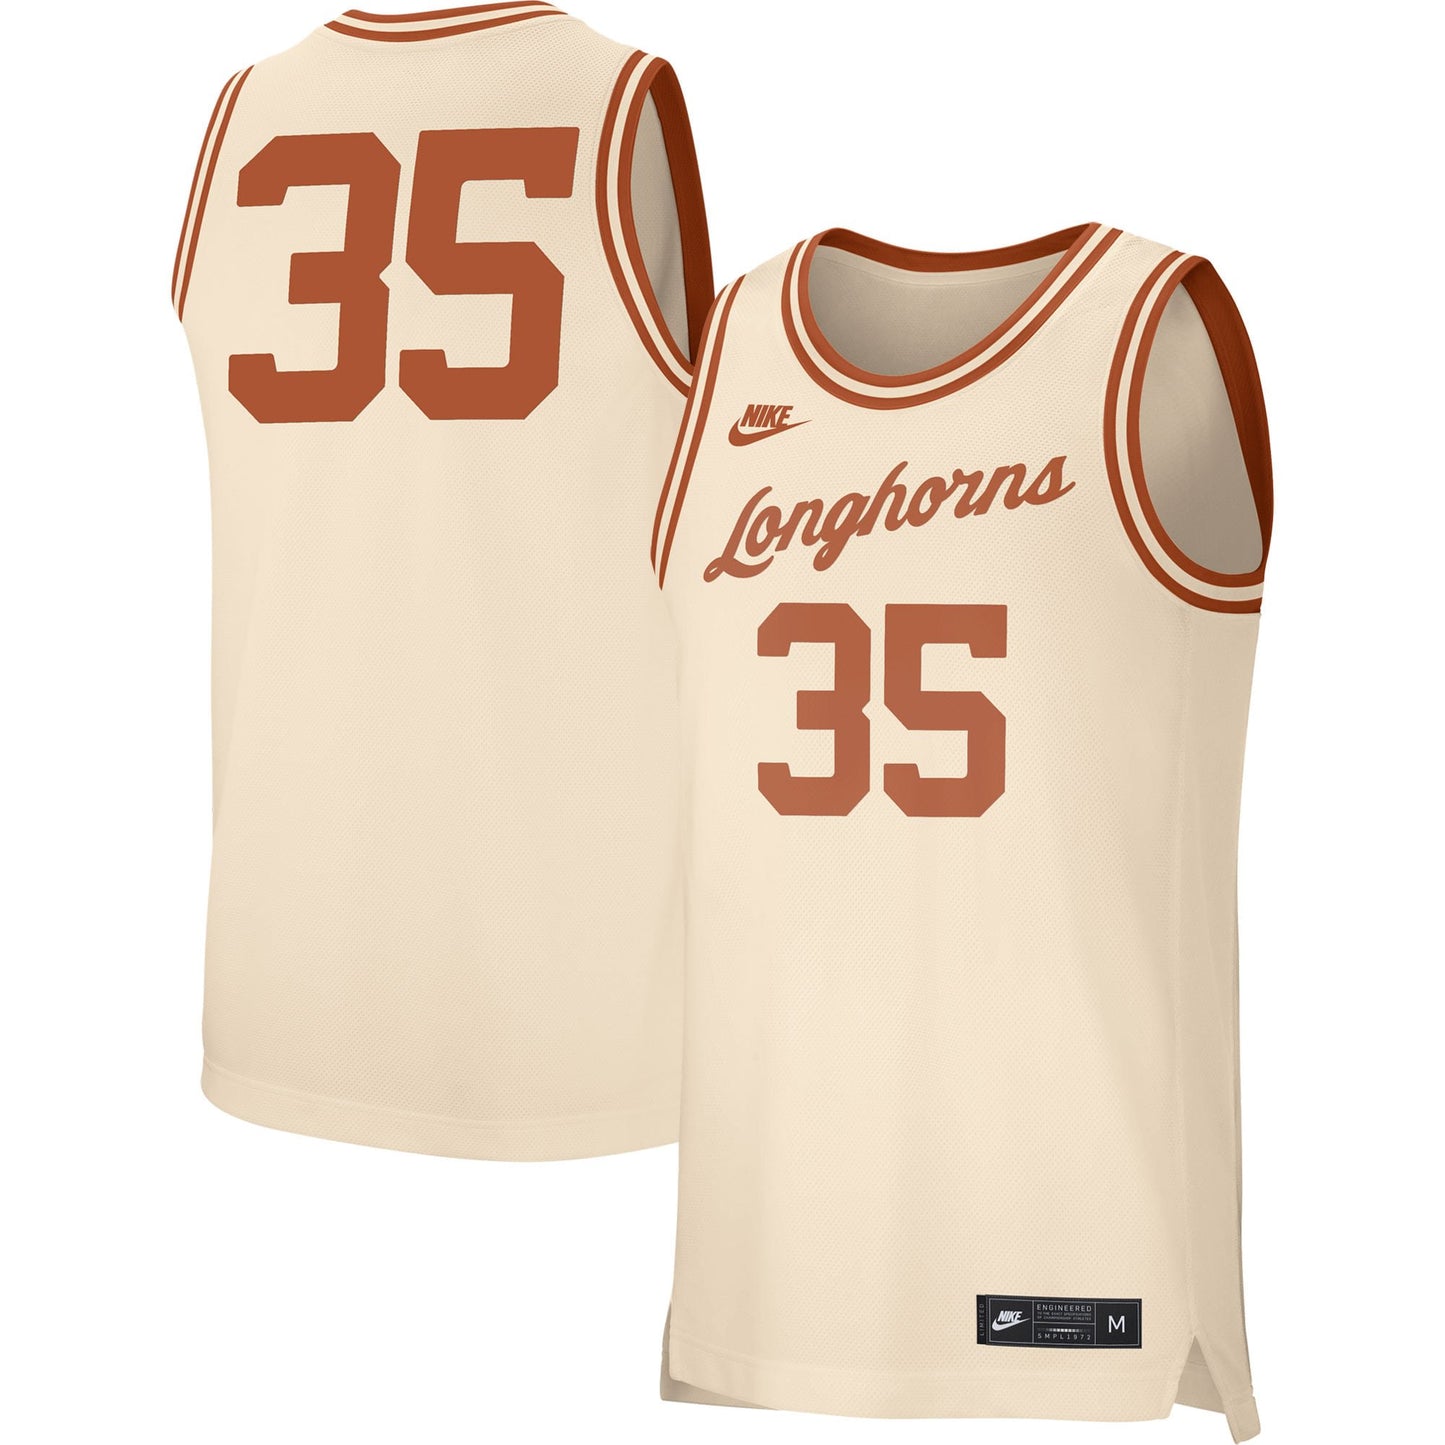 Men's NCAA Texas Longhorns Cream Retro #35 Replica Basketball Jersey